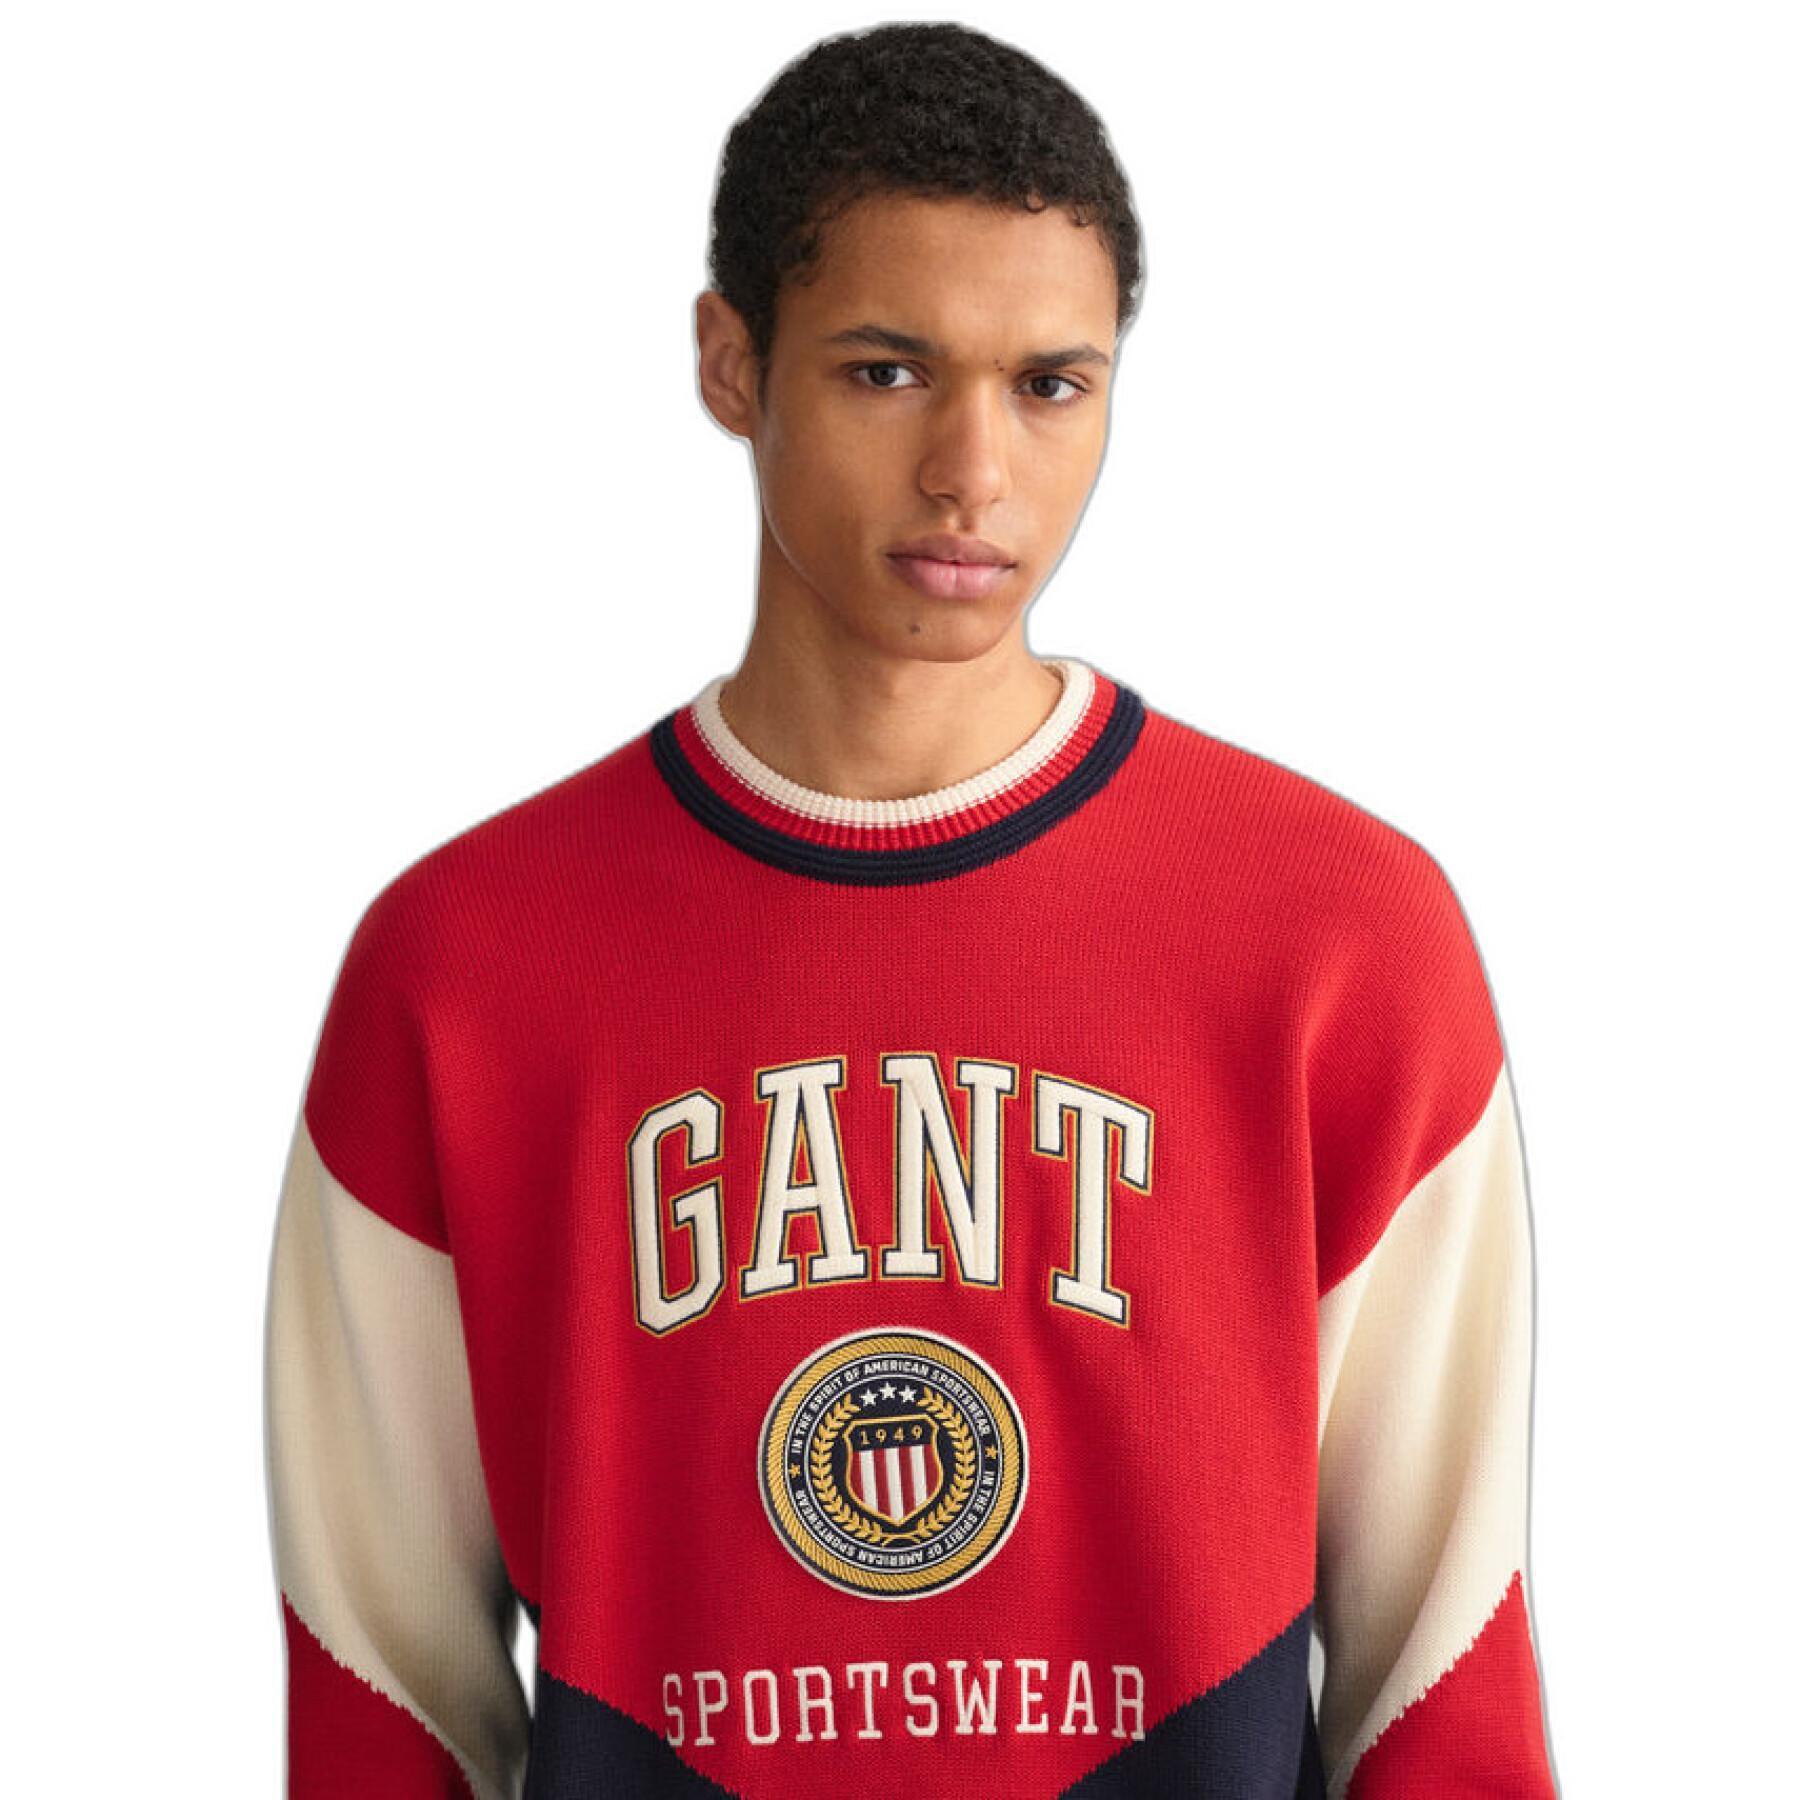 Sweatshirt Gant Crest Shield